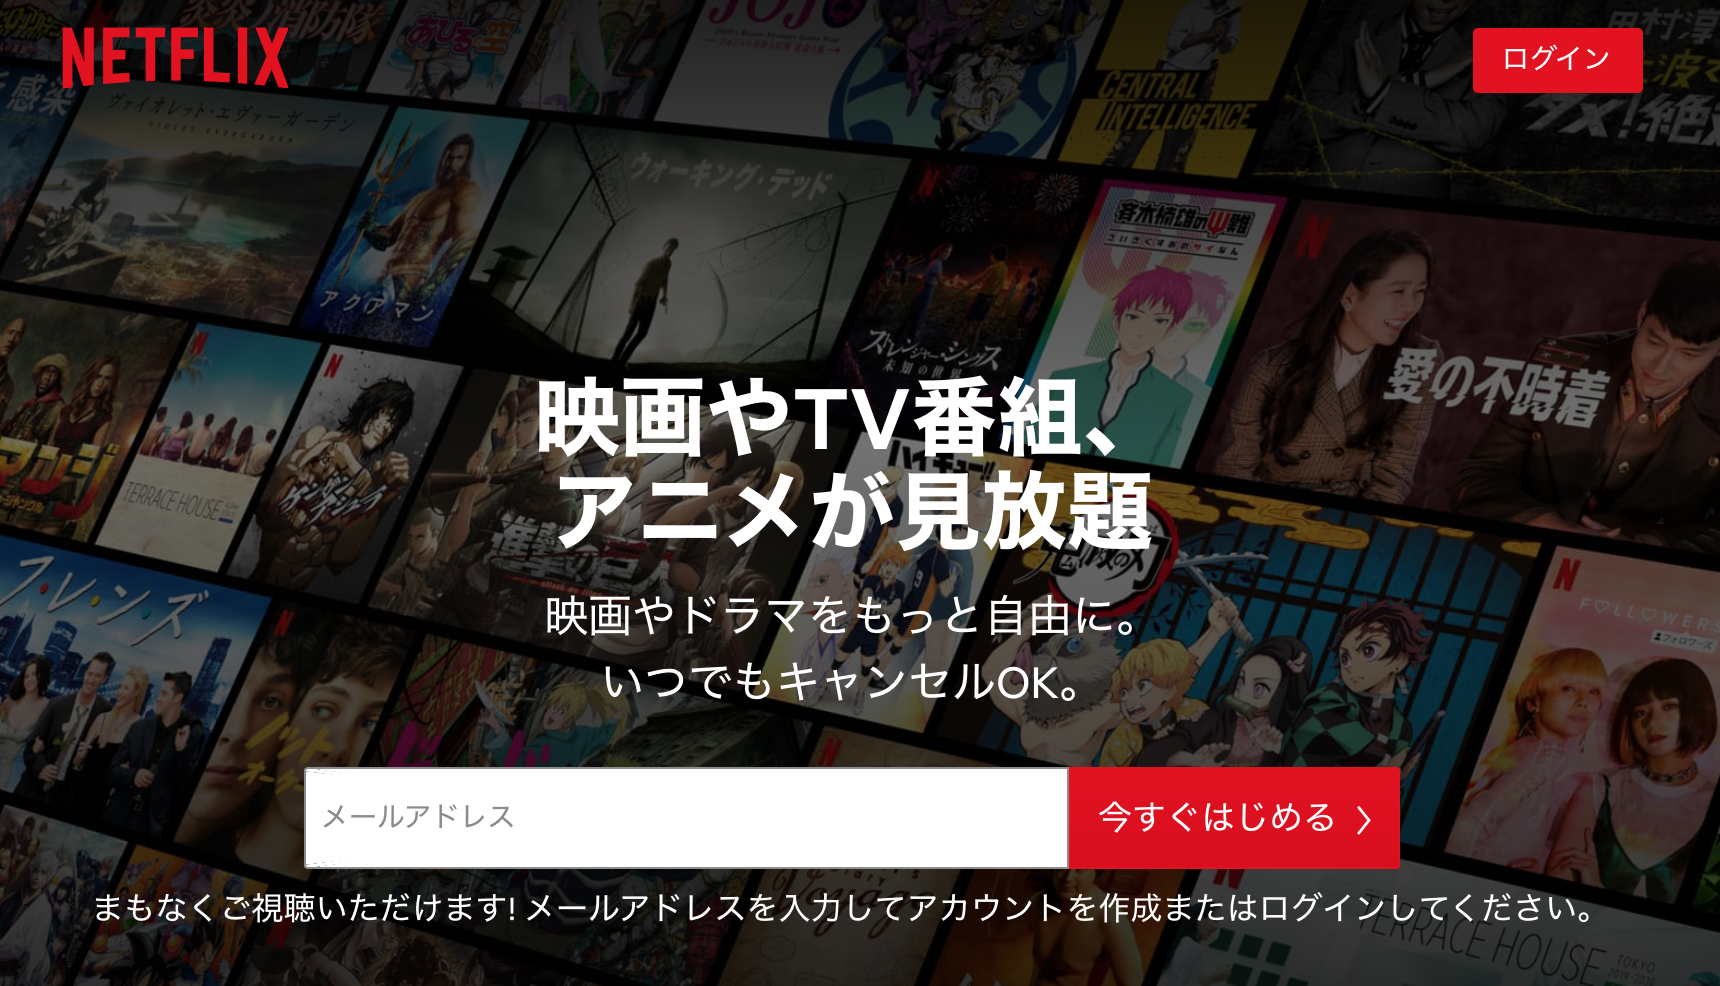 Netflix ネットフリックス プリペイドカードを徹底リサーチ 完全版 Torisetsu